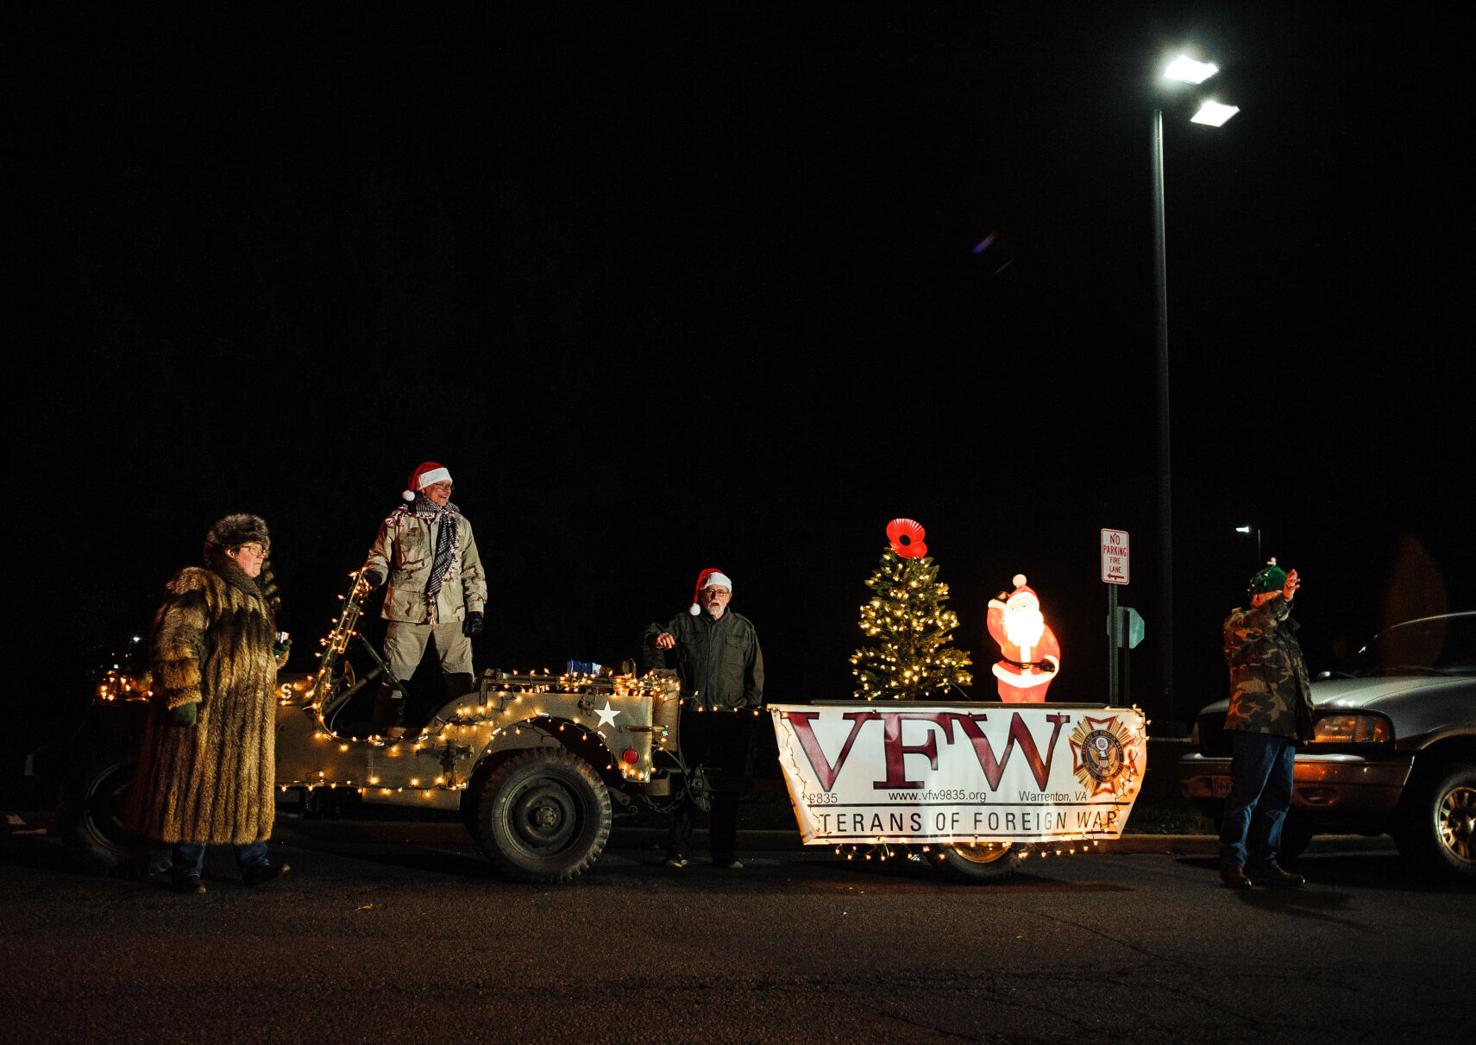 PHOTOS Hundreds attend drivethru Warrenton Christmas parade